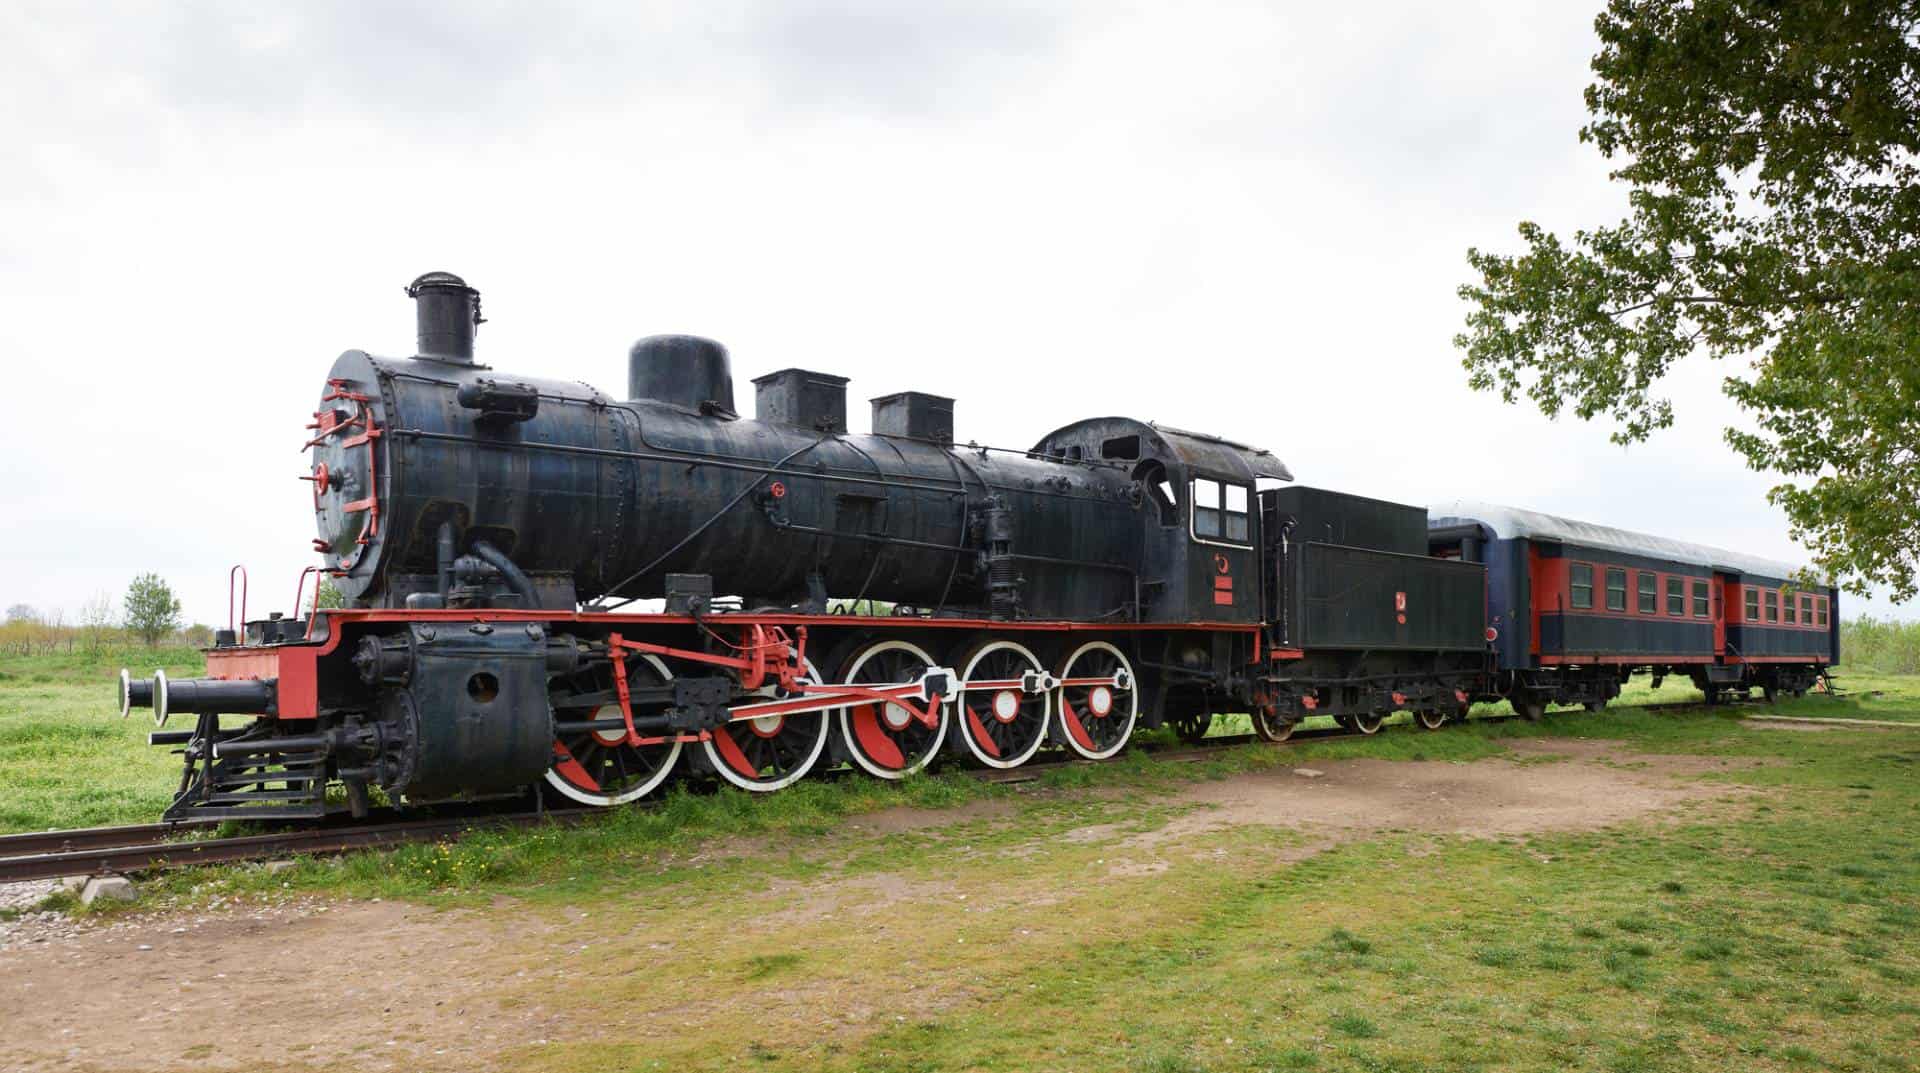 Vintage steam-powered train.